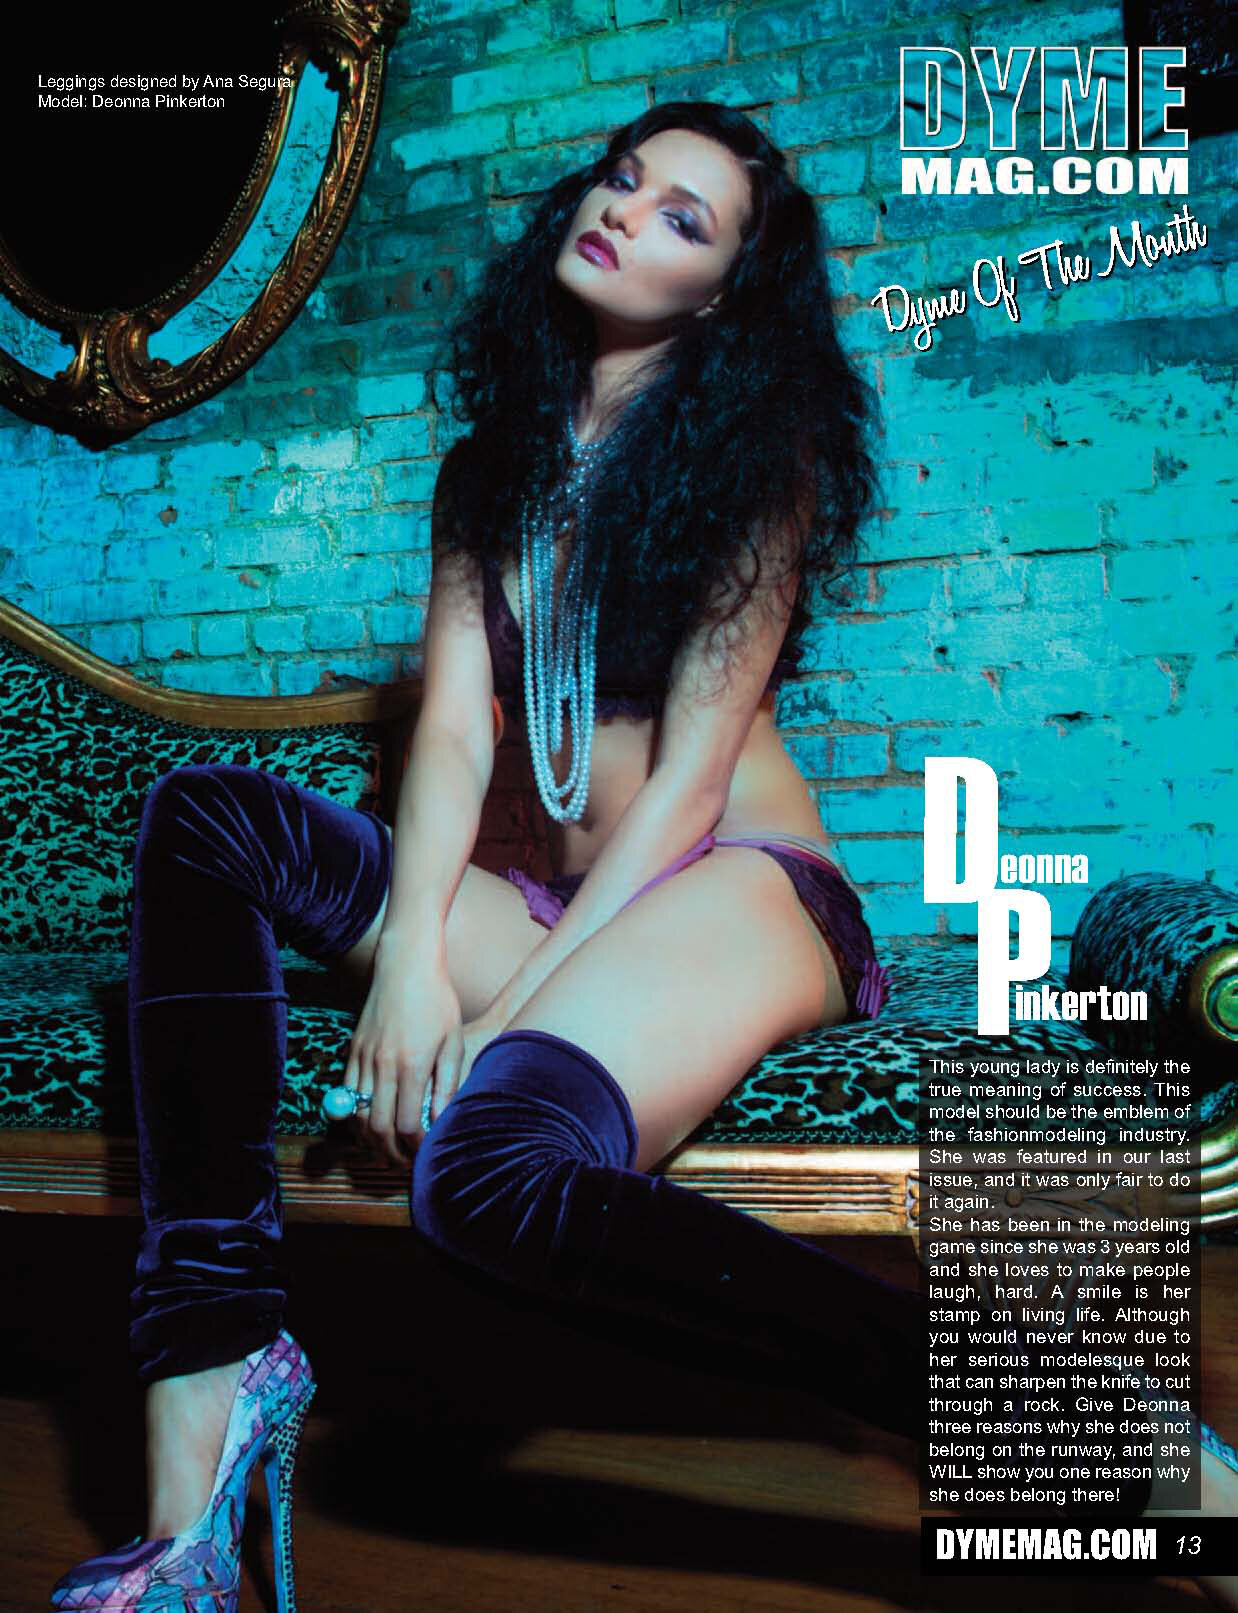 DYME Magazine 2013 Mar-Apr Issue (2)_Page_1.jpg